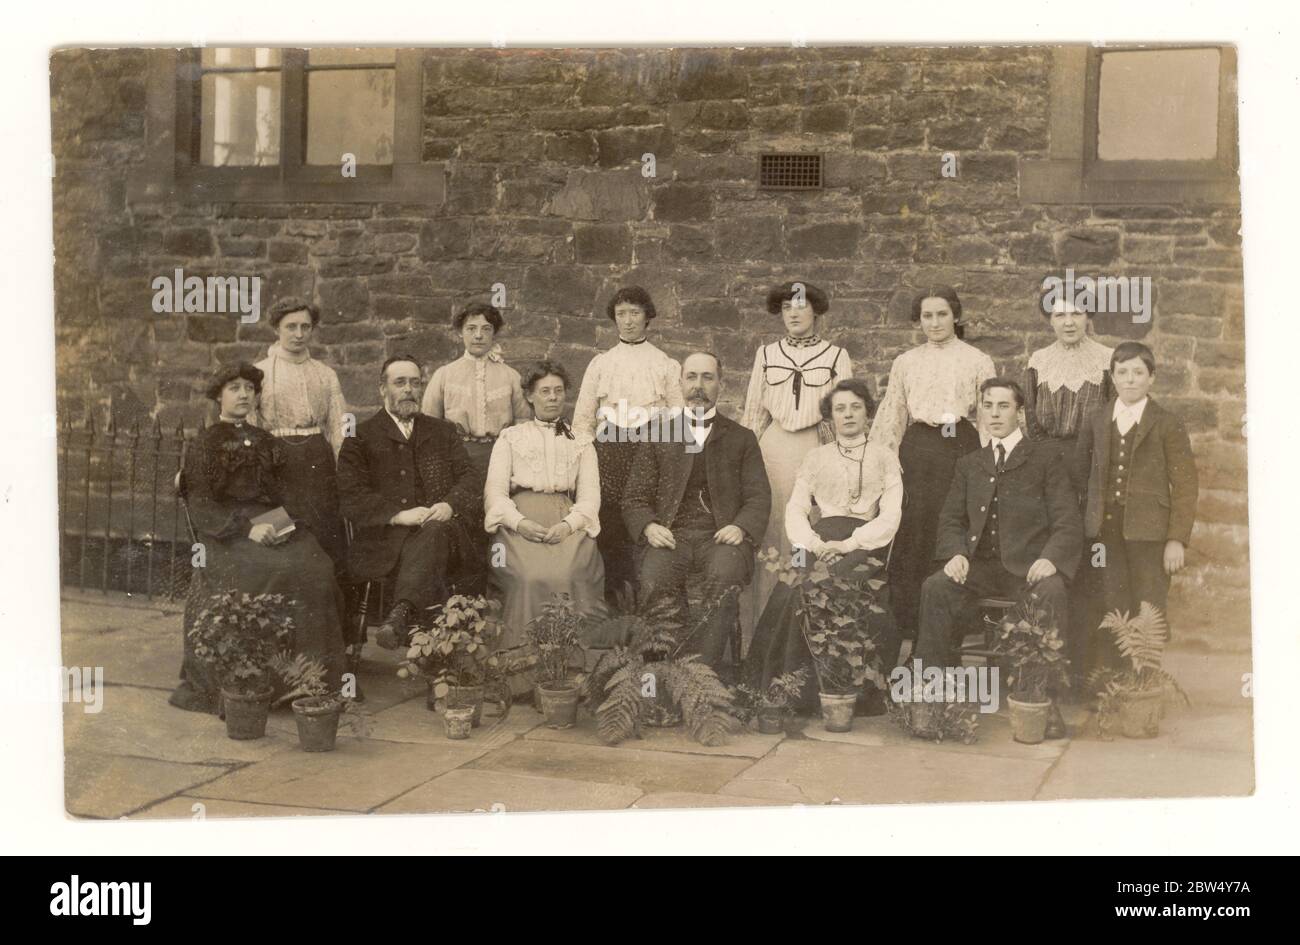 Carte postale Edwardienne originale du début des années 1900, représentant des travailleurs élégants de Blackburn, peut-être des employés de bureau de l'usine de coton, qui posaient à l'extérieur de leur bureau, avec des pots de fleurs, publiée le 27 septembre 1904, Blackburn, Lancashire, Angleterre, Royaume-Uni Banque D'Images